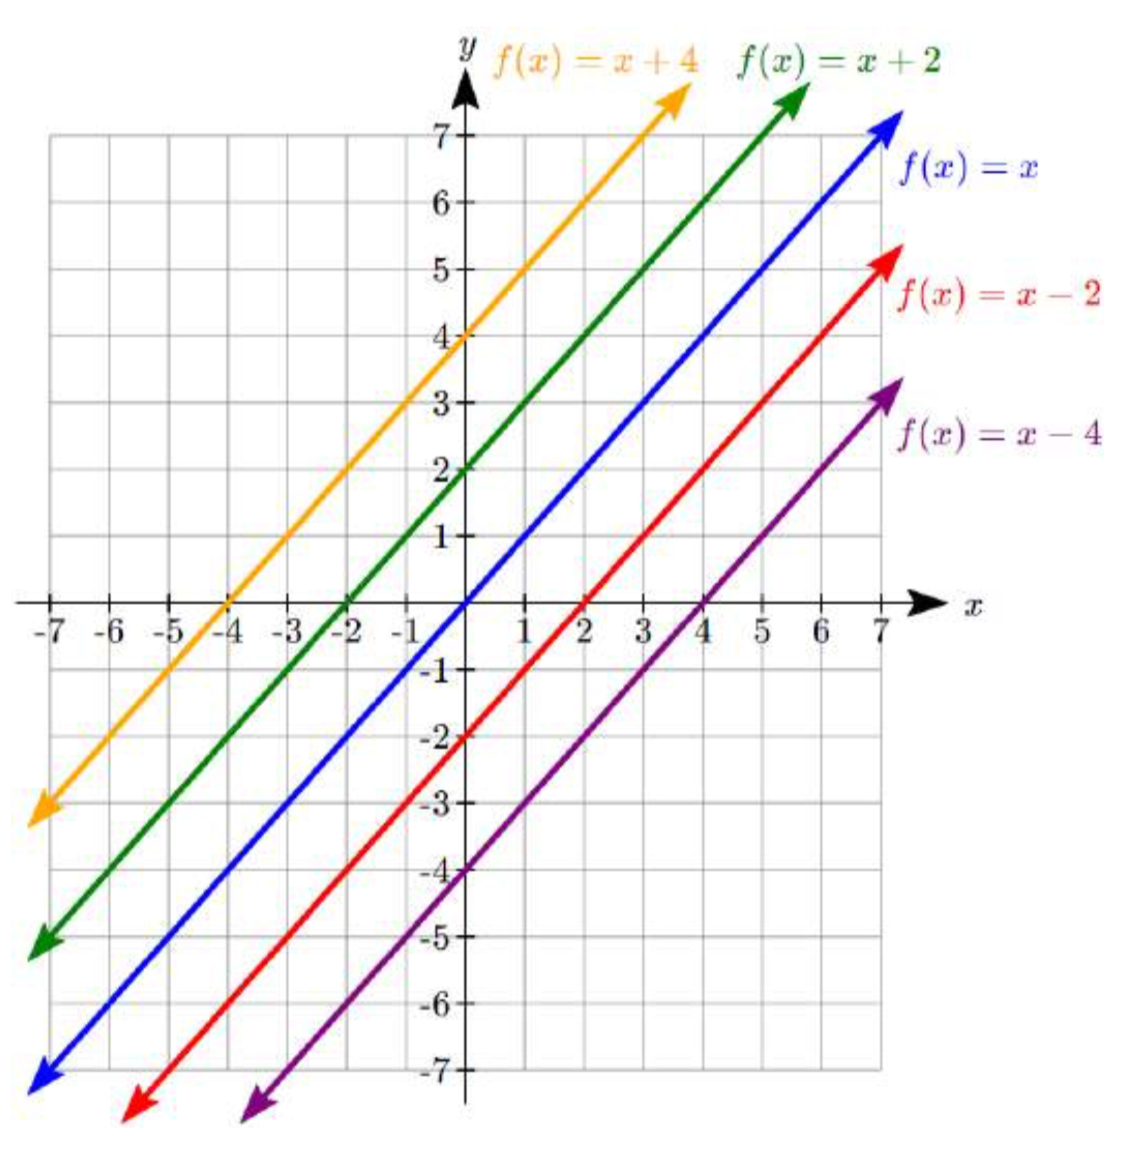 Múltiples líneas etiquetadas en una gráfica, todas paralelas con la misma pendiente. f (x) =x pasando por 0 coma 0 y 2 coma 2. f (x) =xnegativo 2 pasando por 0 coma negativo 2 y 2 coma 0. f (x) =xnegativo 4 pasando por 0 coma negativa 4 y 2 coma negativa 2. f (x) =x+2 pasando por 0 coma 2 y 2 coma f (4. x) =x+4 pasando por 0 coma 4 y 2 coma 6